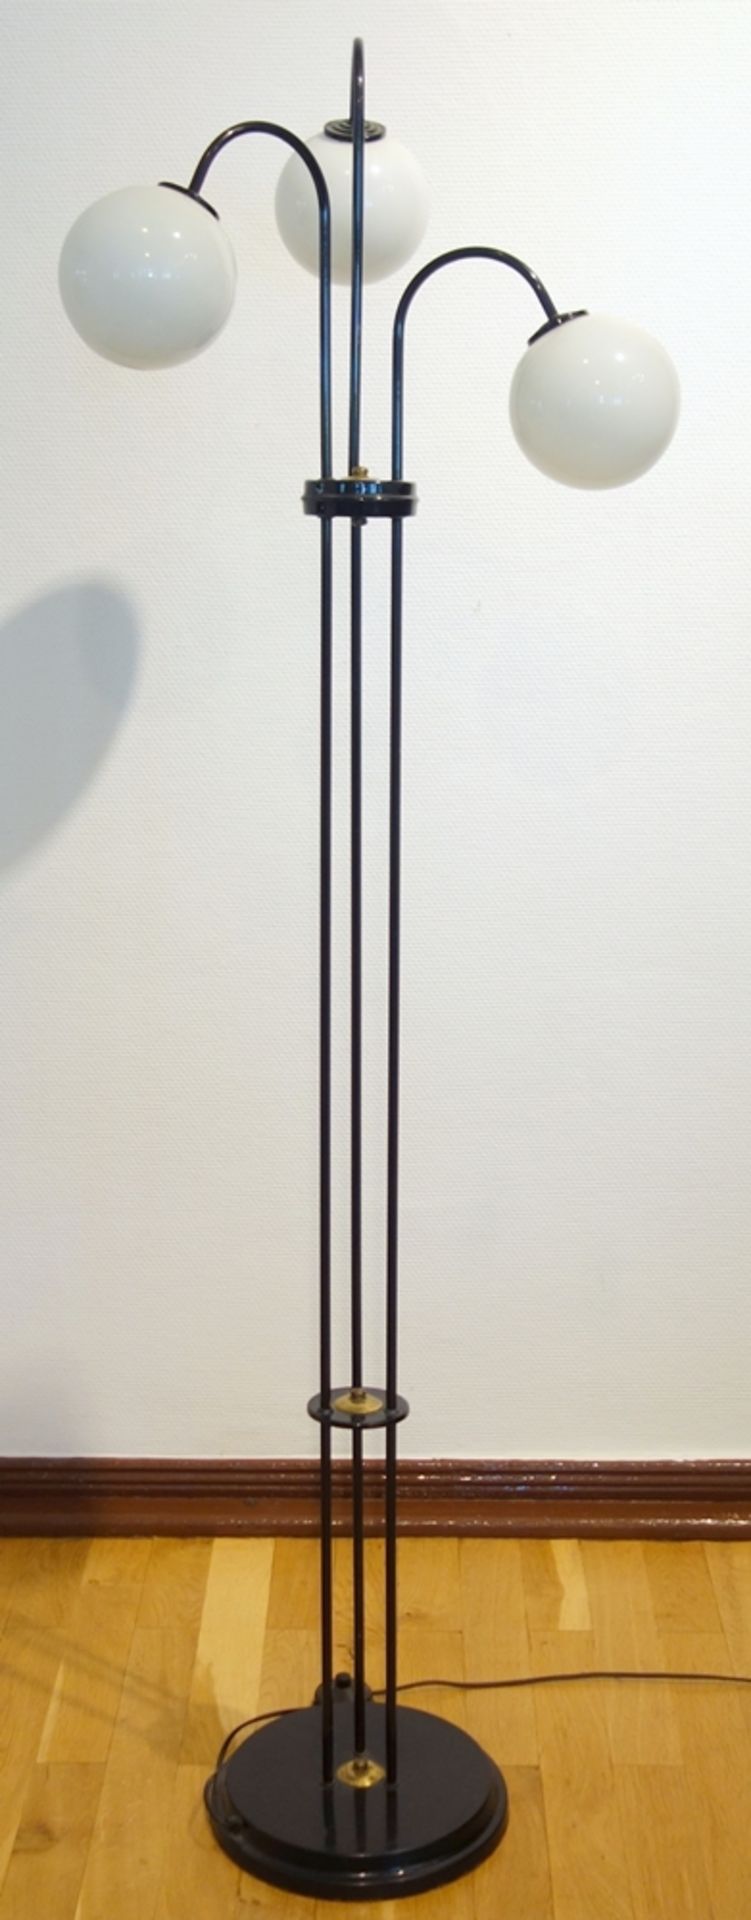 Stehlampe mit Kugelschirmen, 1950er/1960er Jahre, schwarz lackiert, mit drei Milchglaskugeln, - Bild 2 aus 2